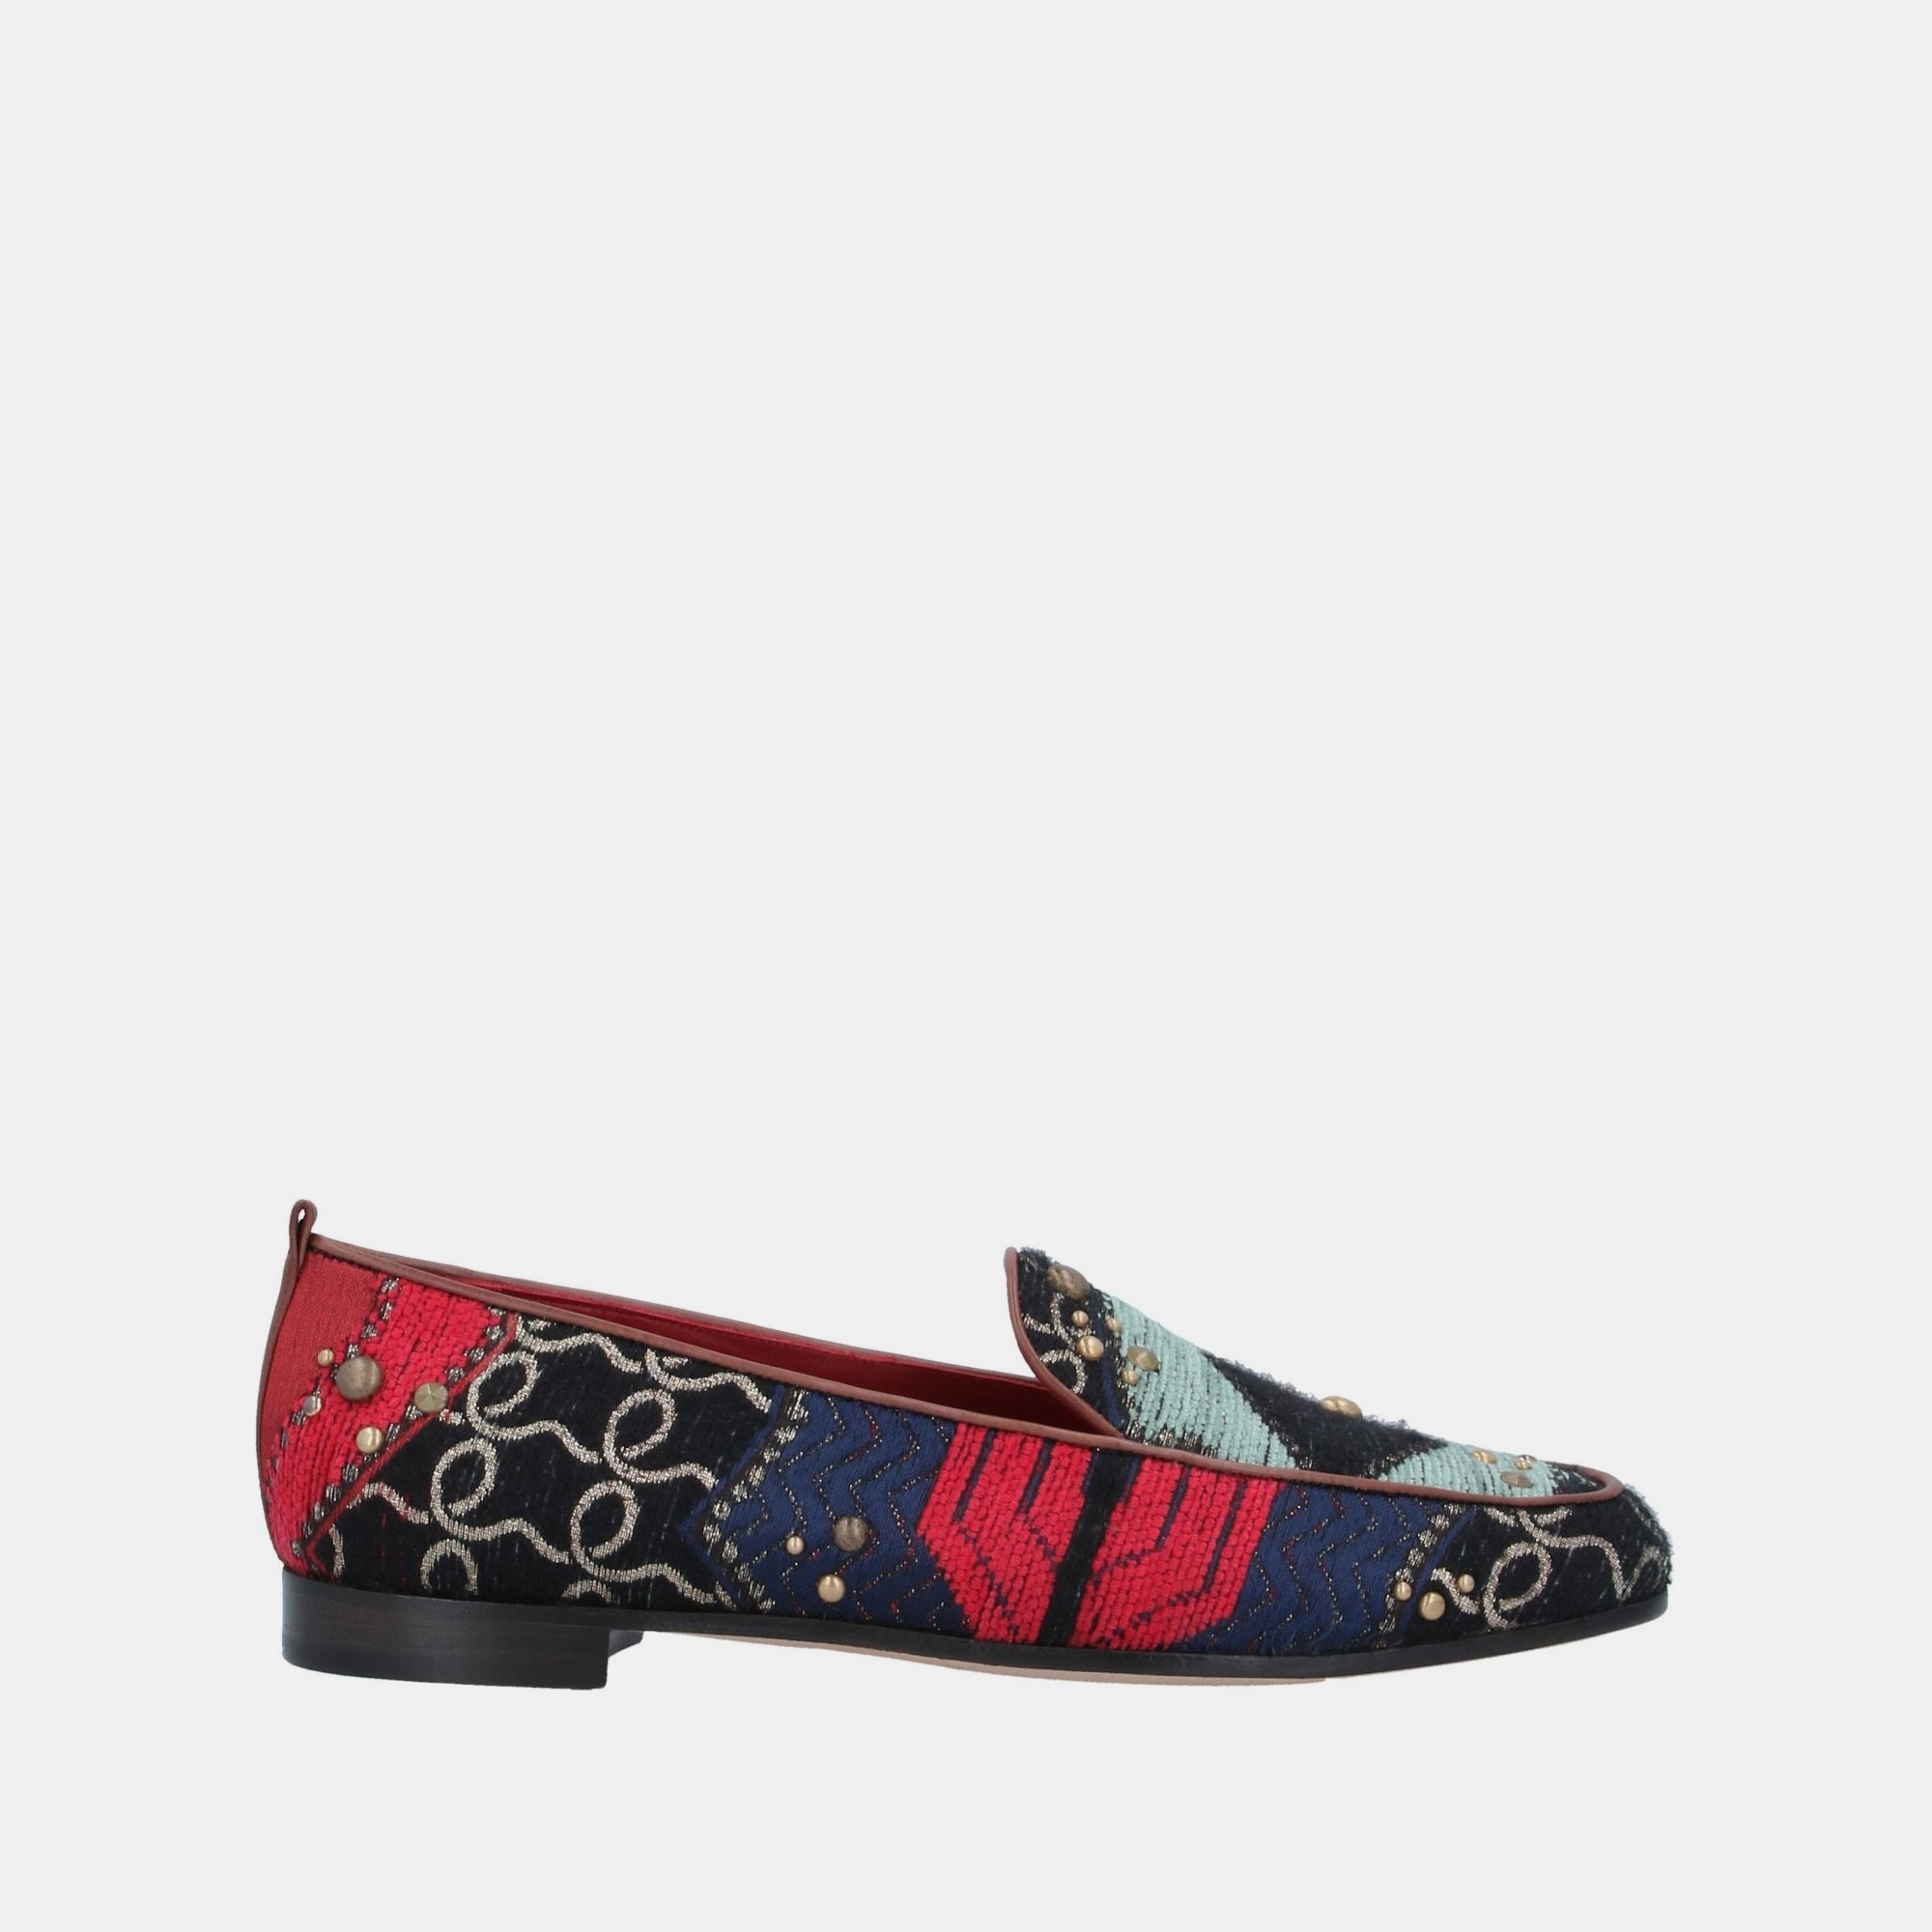 Pre-owned Giorgio Armani Multicolor Fabric Loafers Size 36